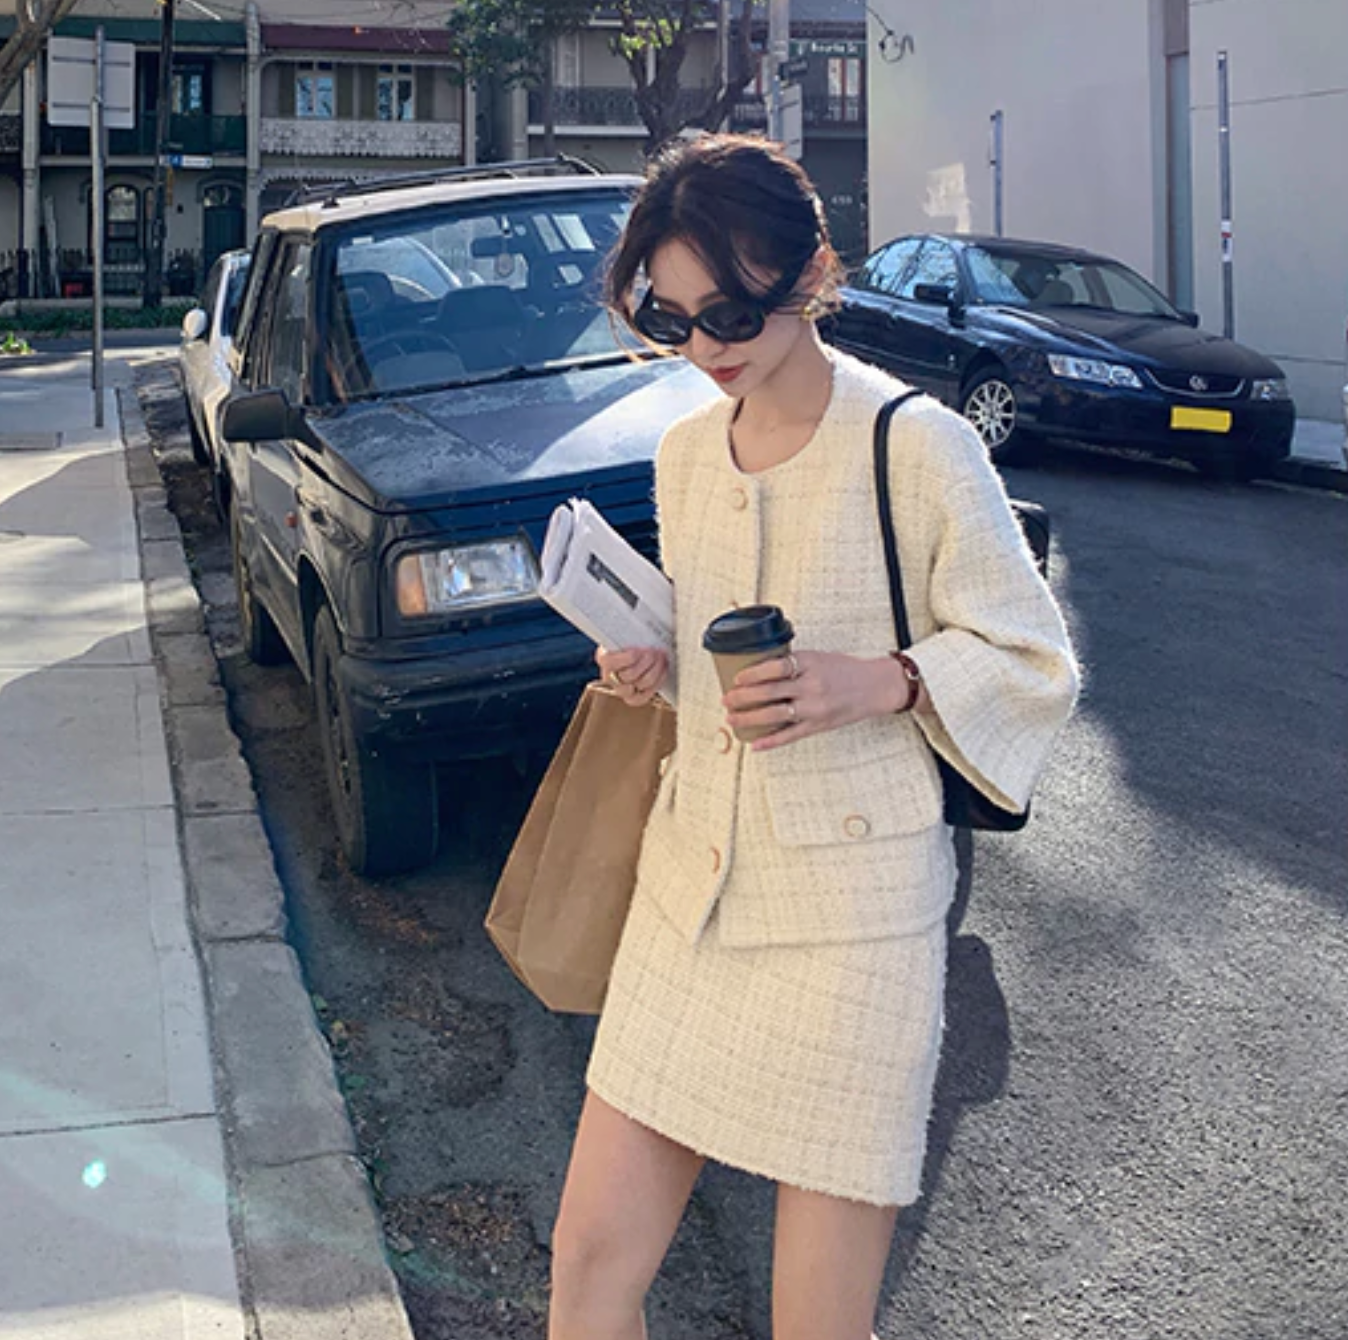 [Korean Style] Laurita Vintage Style Tweed Suit Set